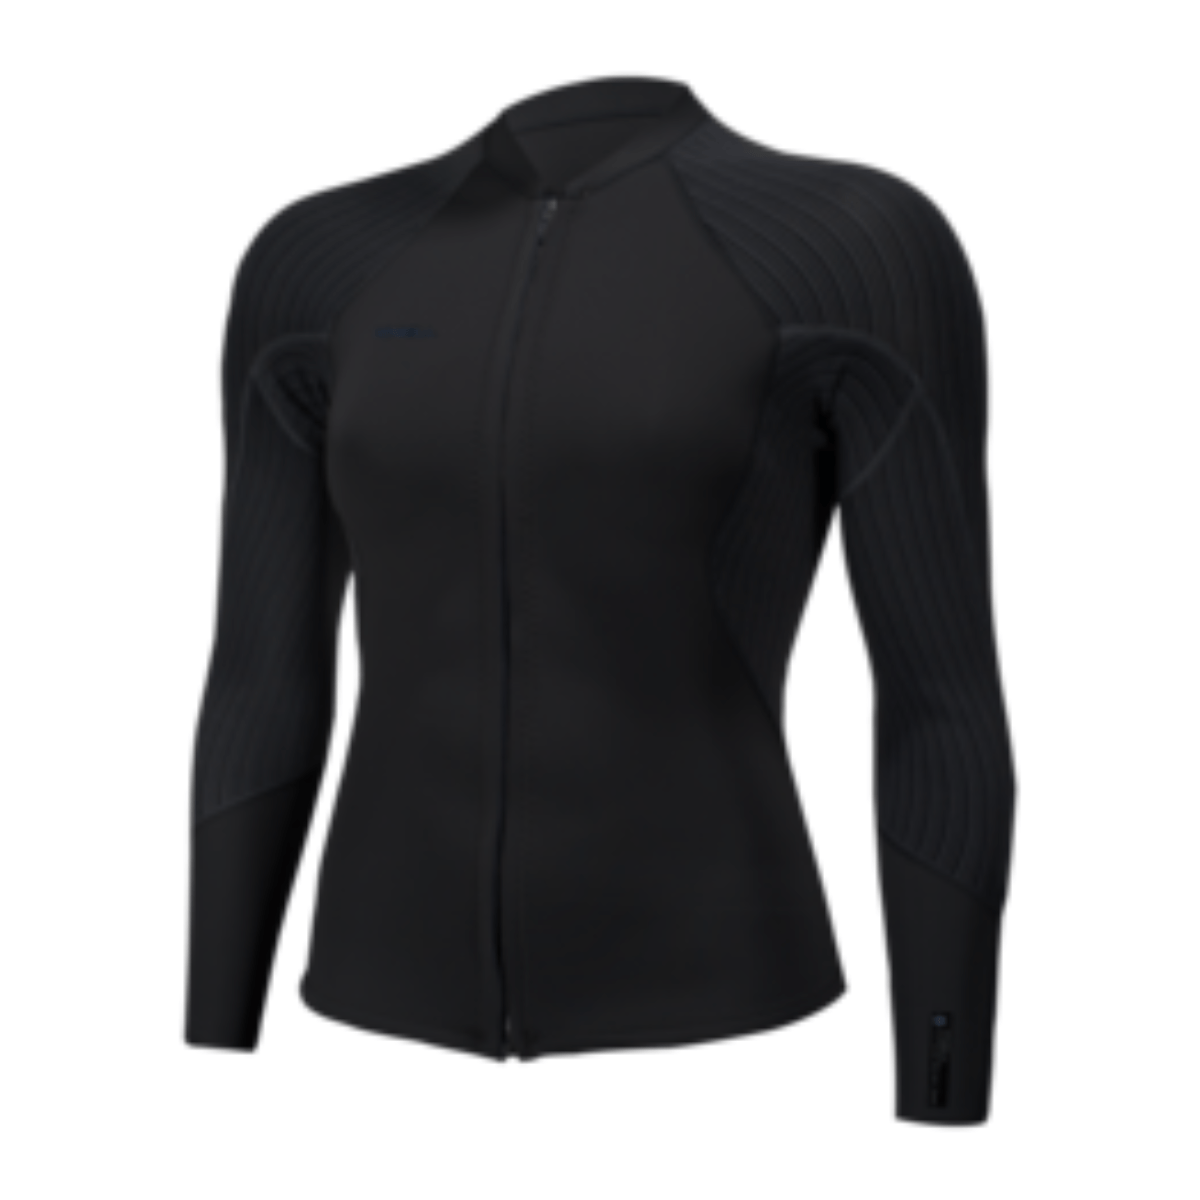 Oneill Womens Hyperfreak 2mm Front Zip Jacket in Black - BoardCo